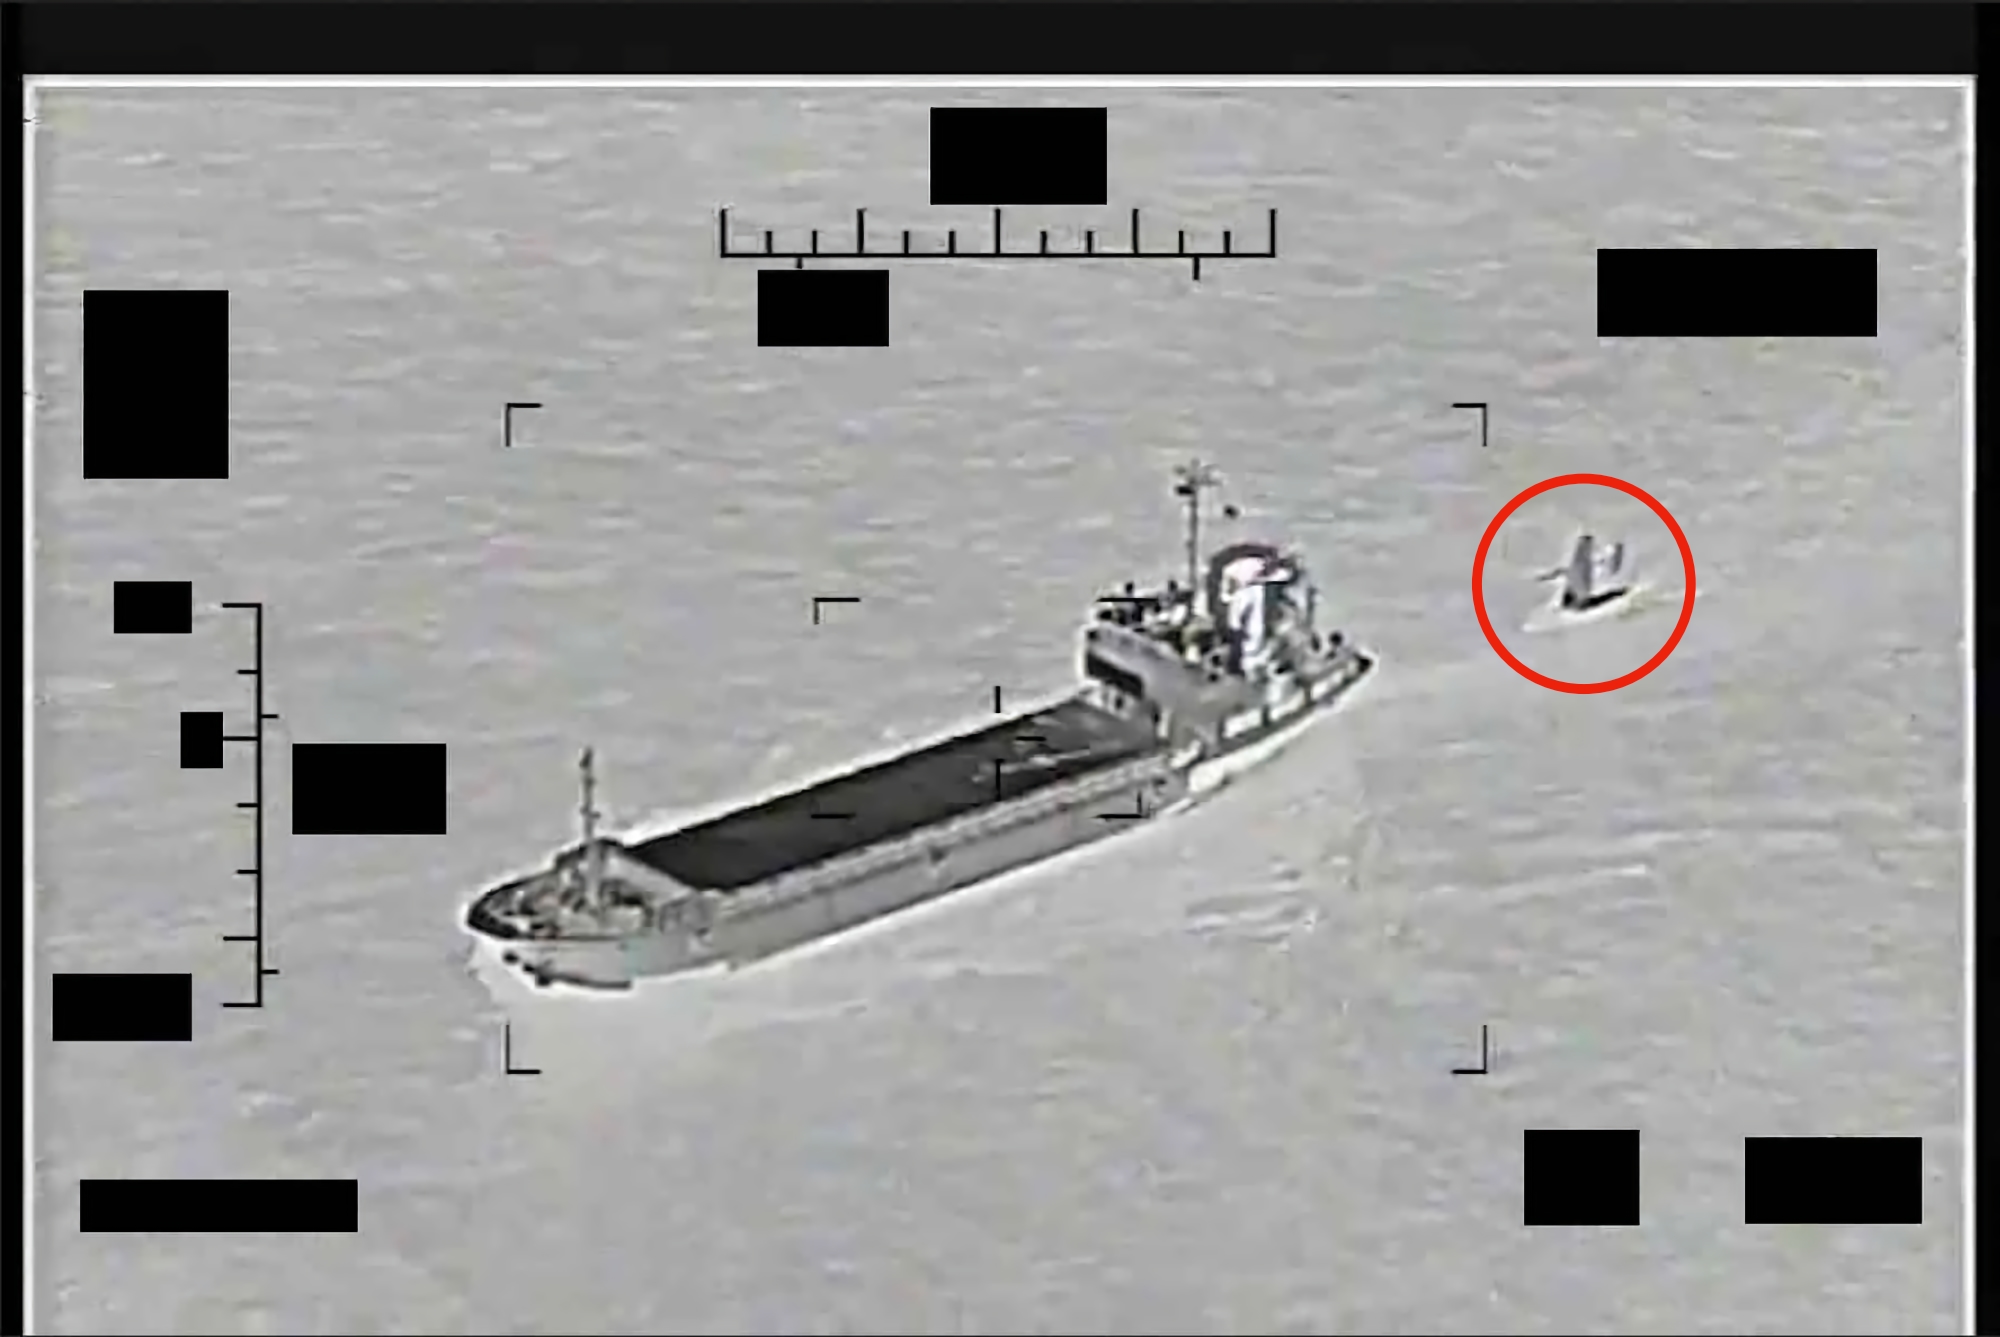 Іран намагався захопити безпілотне судно США Saildrone Explorer у Перській затоці, за ним відправили сторожовий катер USS Thunderbolt та вертоліт MH-60S Sea Hawk